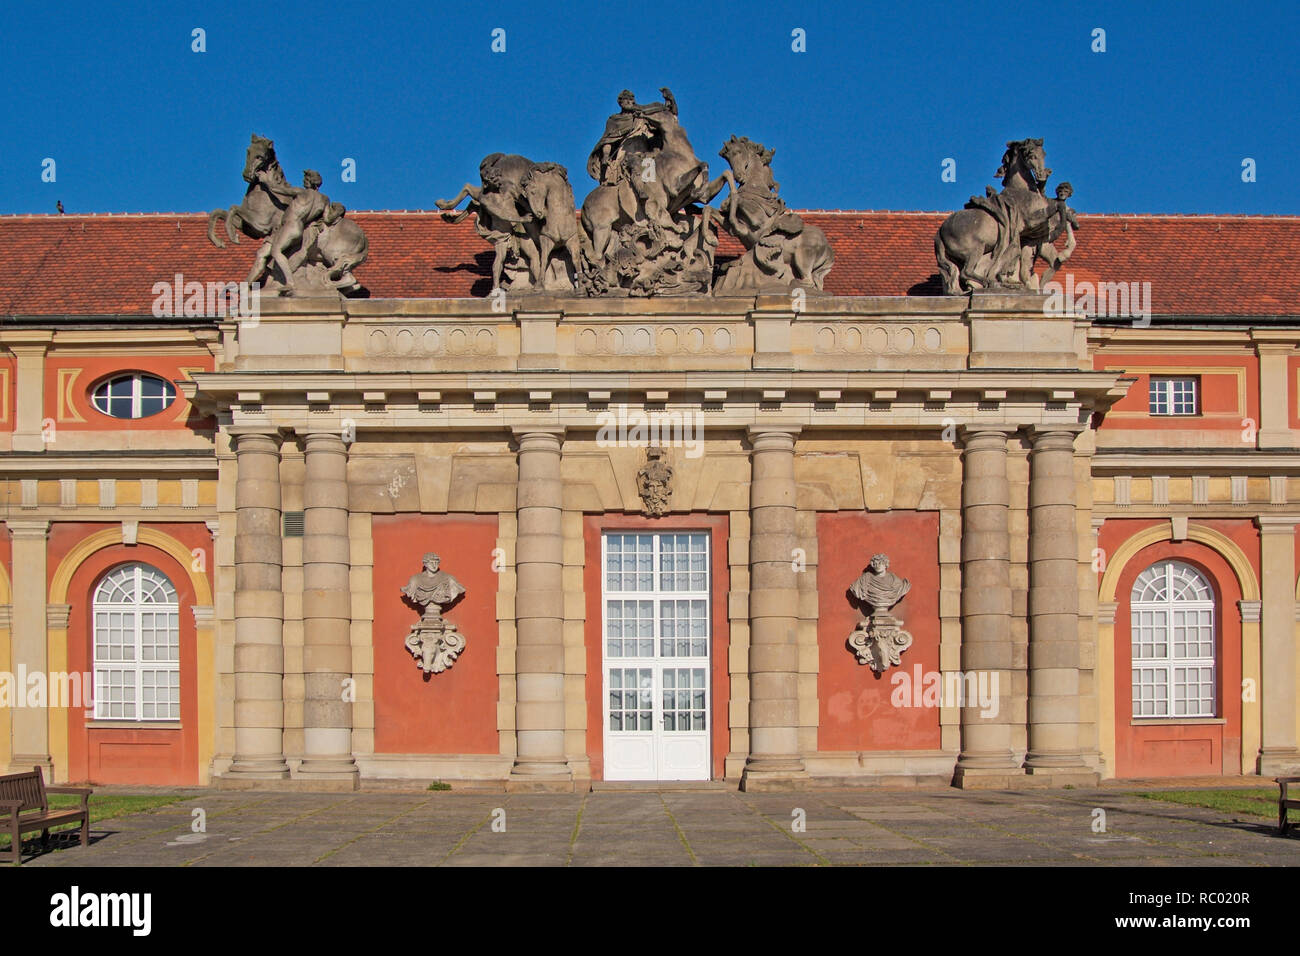 Filmmuseum im ehemaligen Marstall, der 1675 als Orangerie errichtet und seit 1714 als Pferdestall genutzt wurde, Potsdam, Brandenburg, Deutschland, Eu Stockfoto